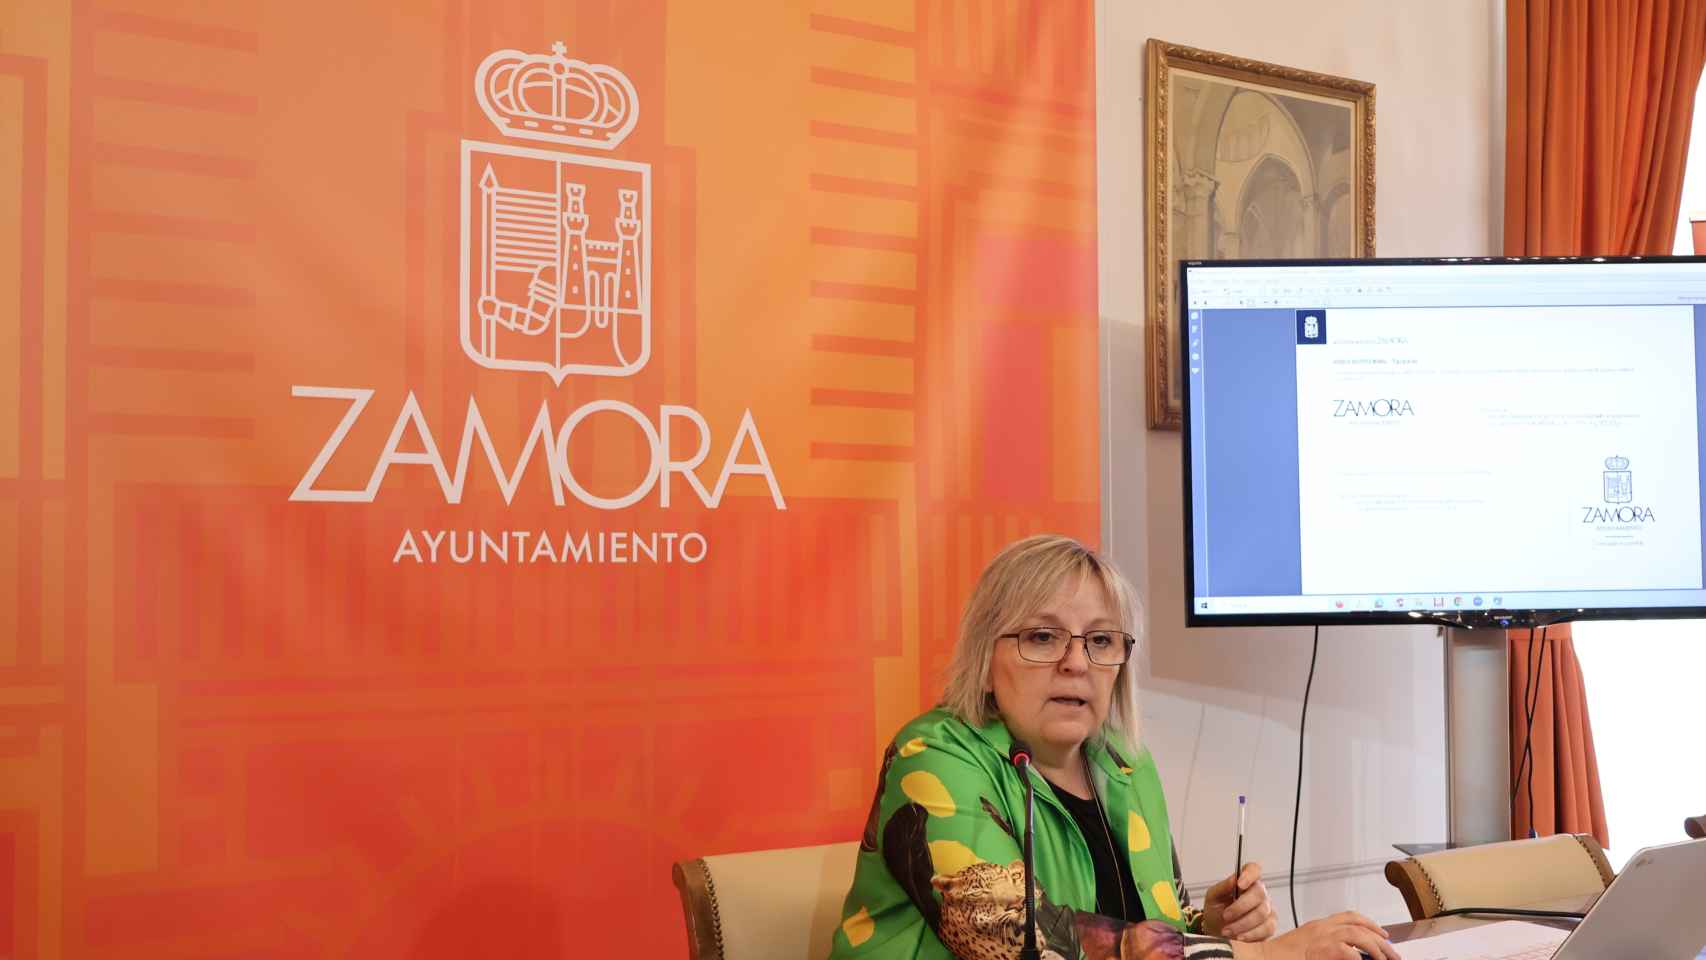 La concejal Ana Belén González muestra el nuevo logotipo del Ayuntamiento de Zamora